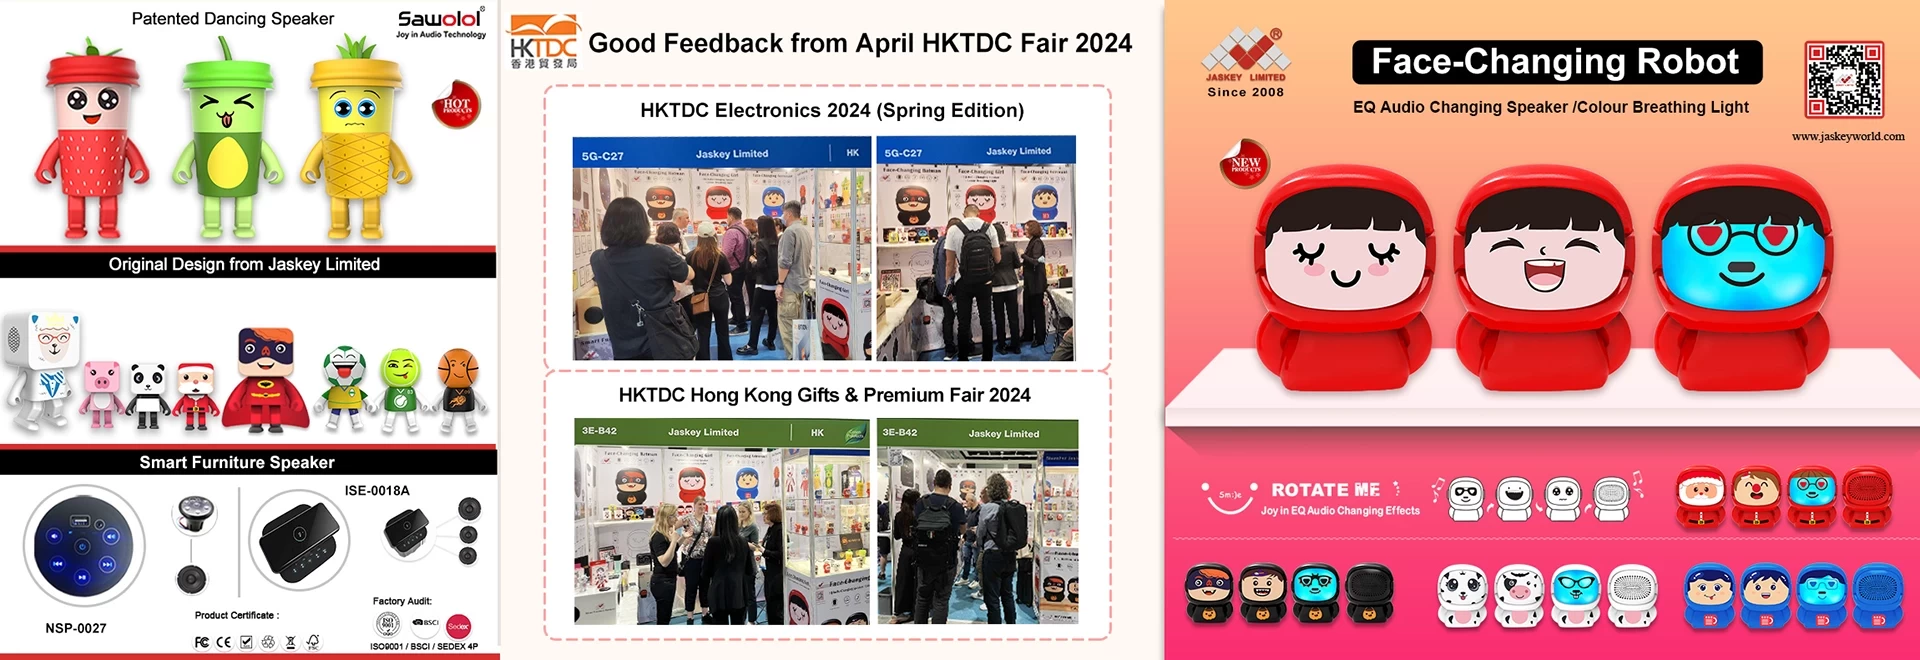 HKTDC Electronics 2024 (Bahar Sürümü) ve Gifts & Premium Fuarı'ndan güzel geri bildirimler